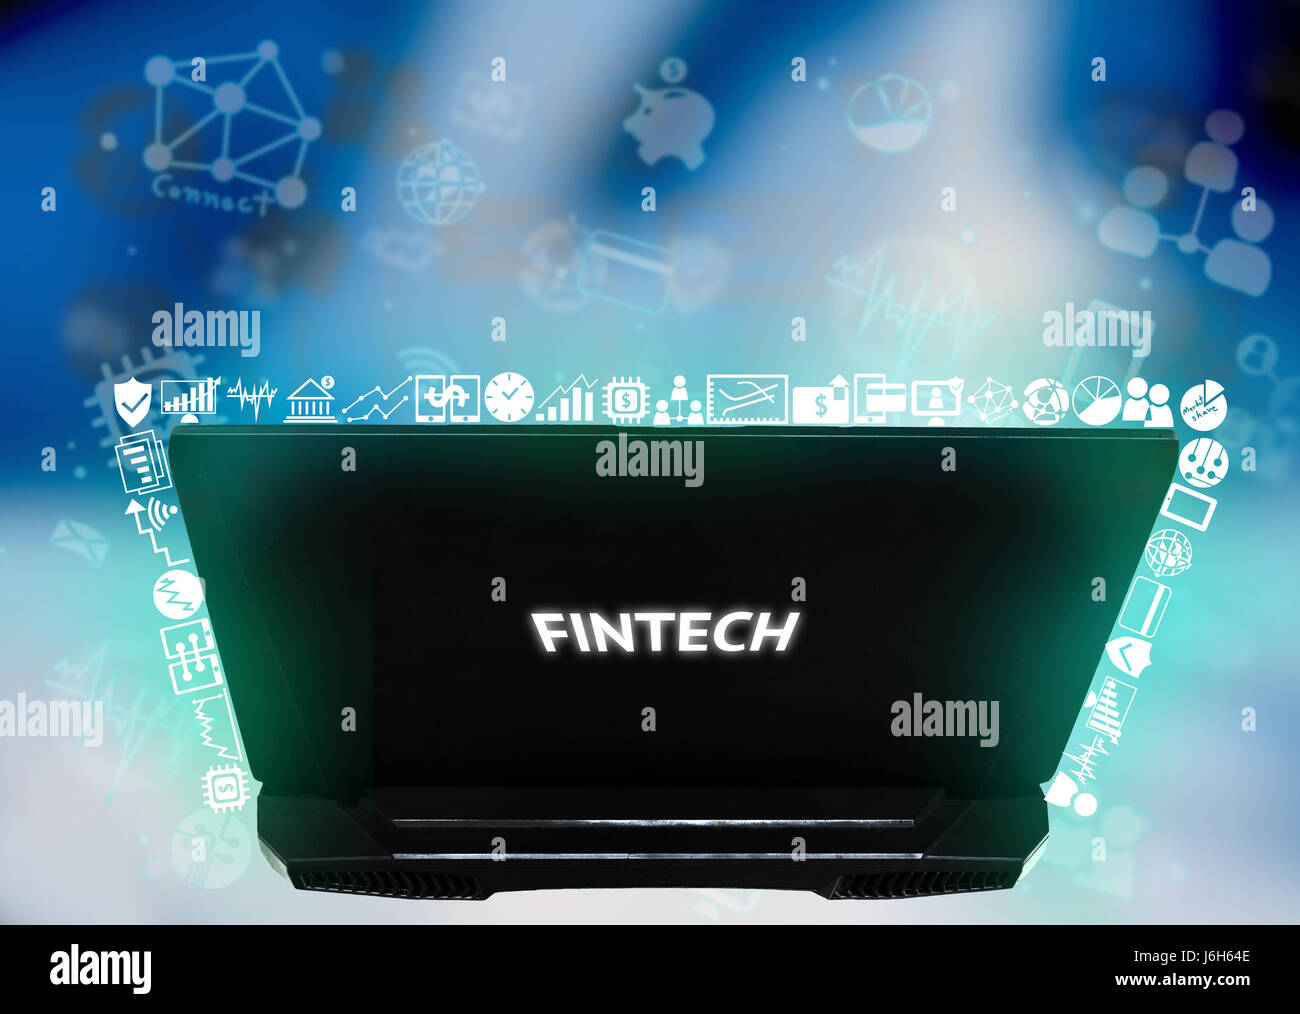 La technologie de l'Internet financier Investissement Fintech Concept. Ordinateur portable , icône avec abstract blue background Banque D'Images